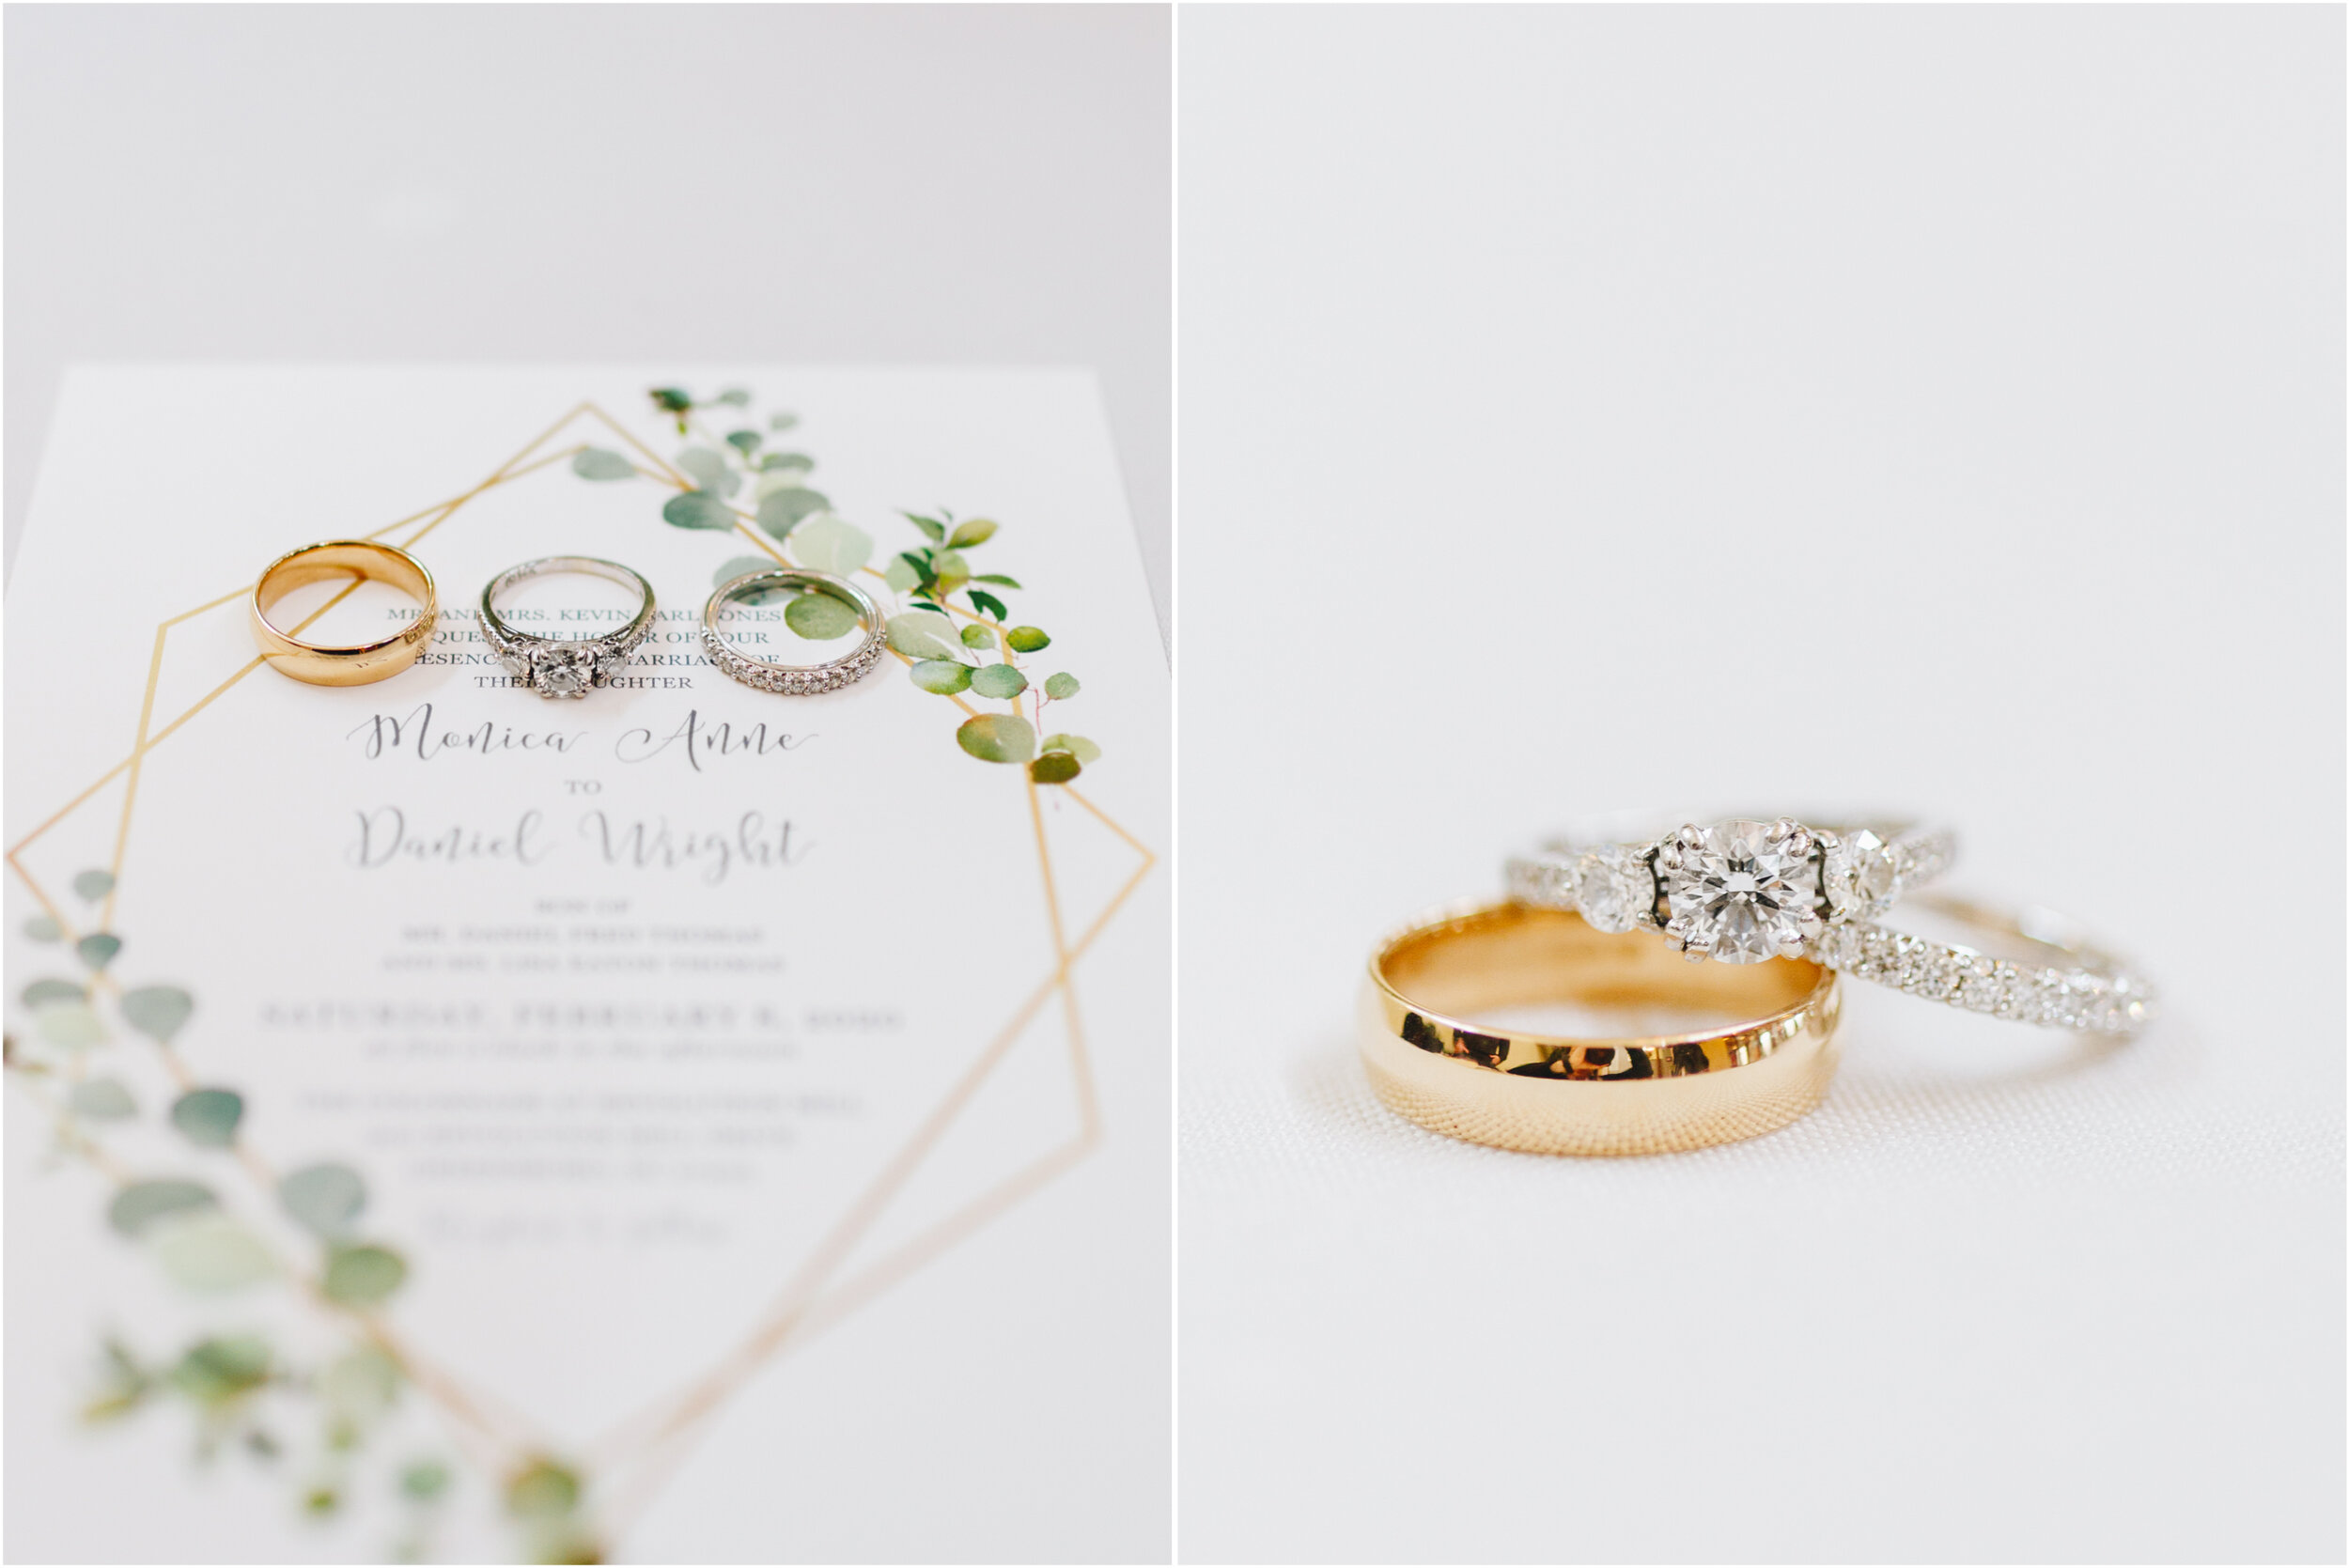 Wedding Detail photos, rings